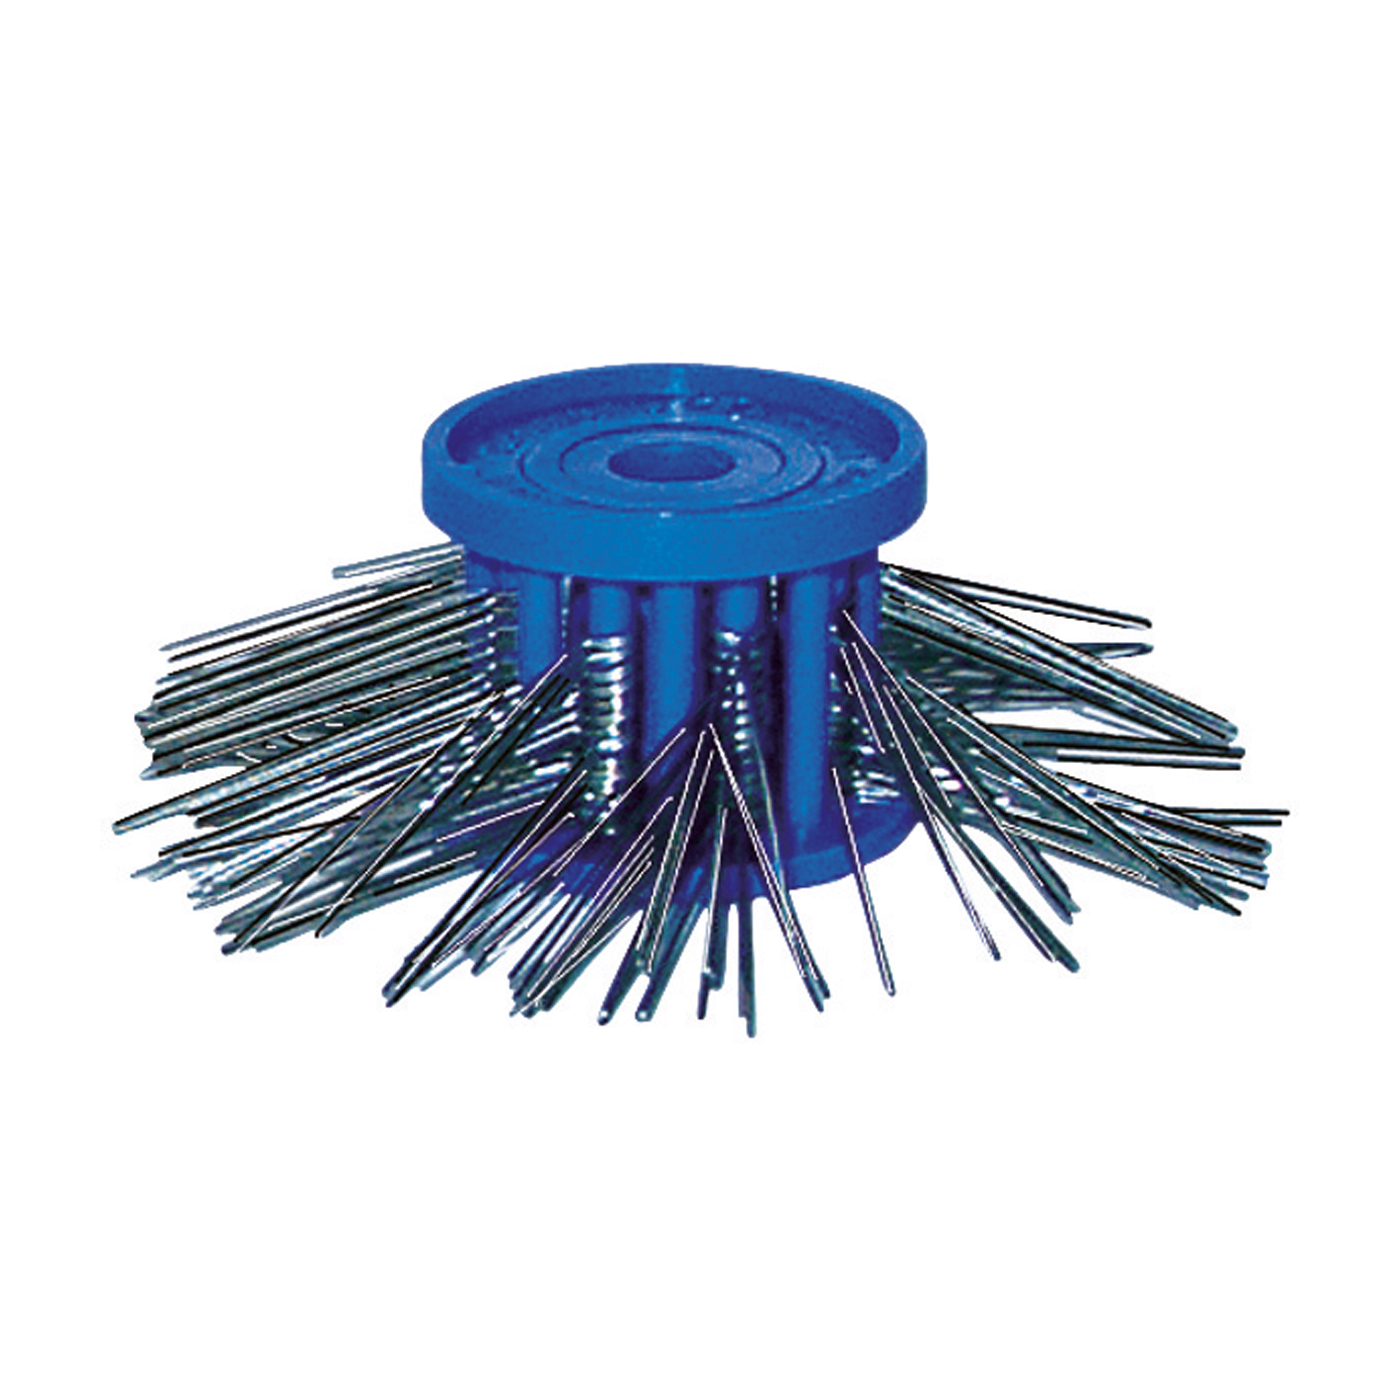 Matting Wire Brush, ø 0.45 mm, Blue - 1 piece